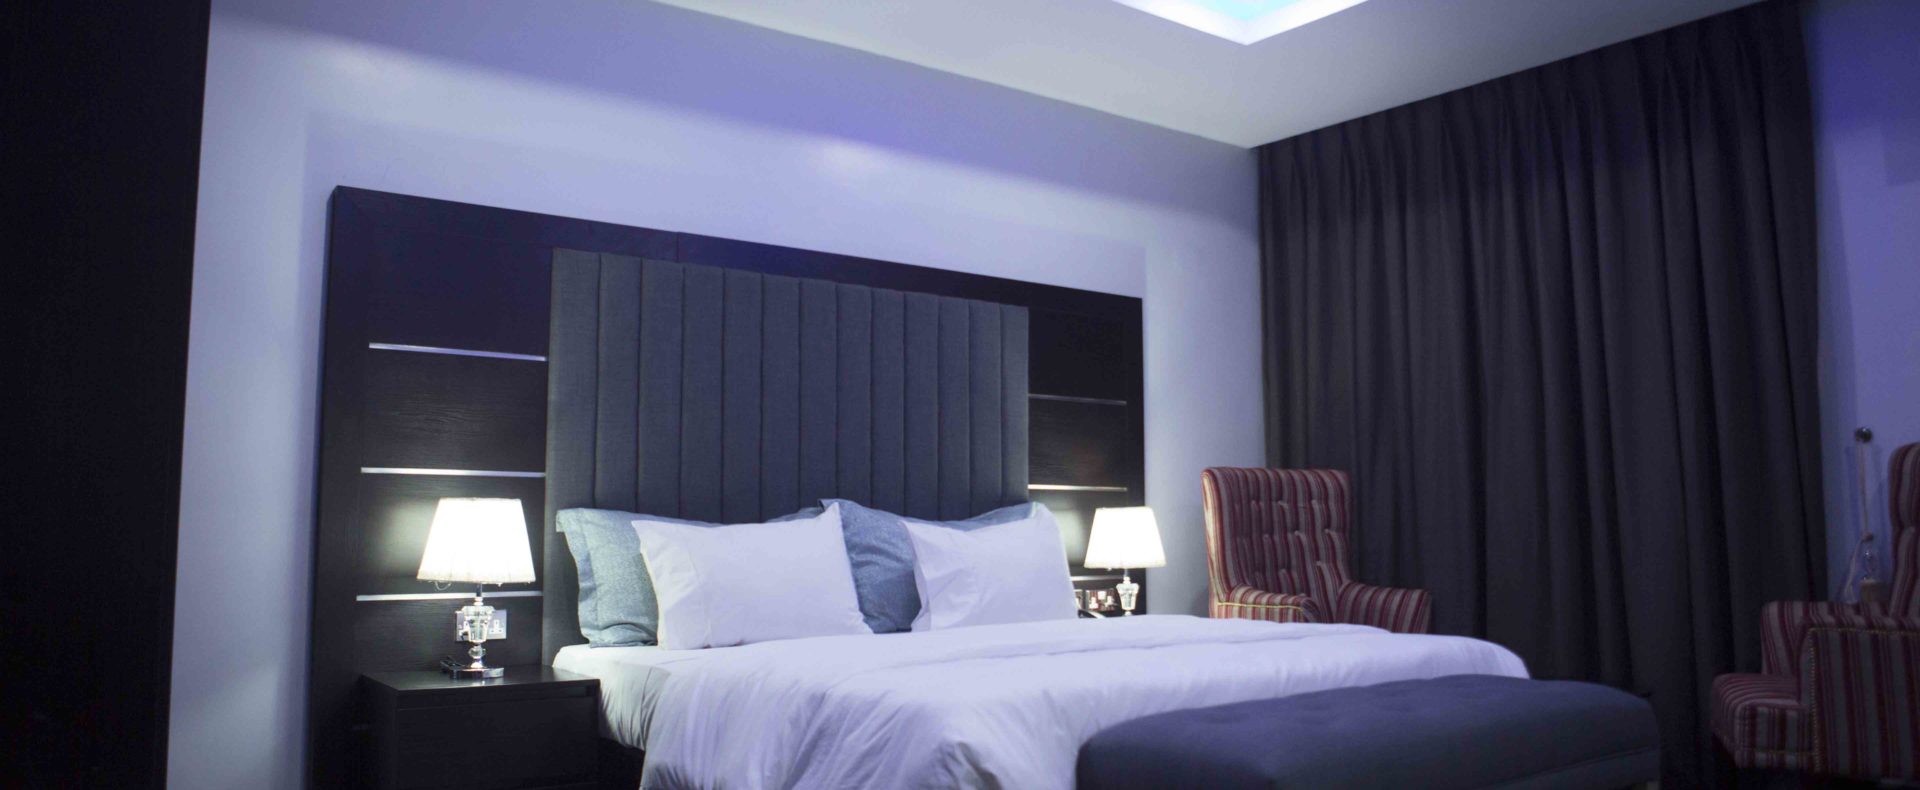 Hotel Double Standard In Lekki Phase 1 Lagos Nigeria